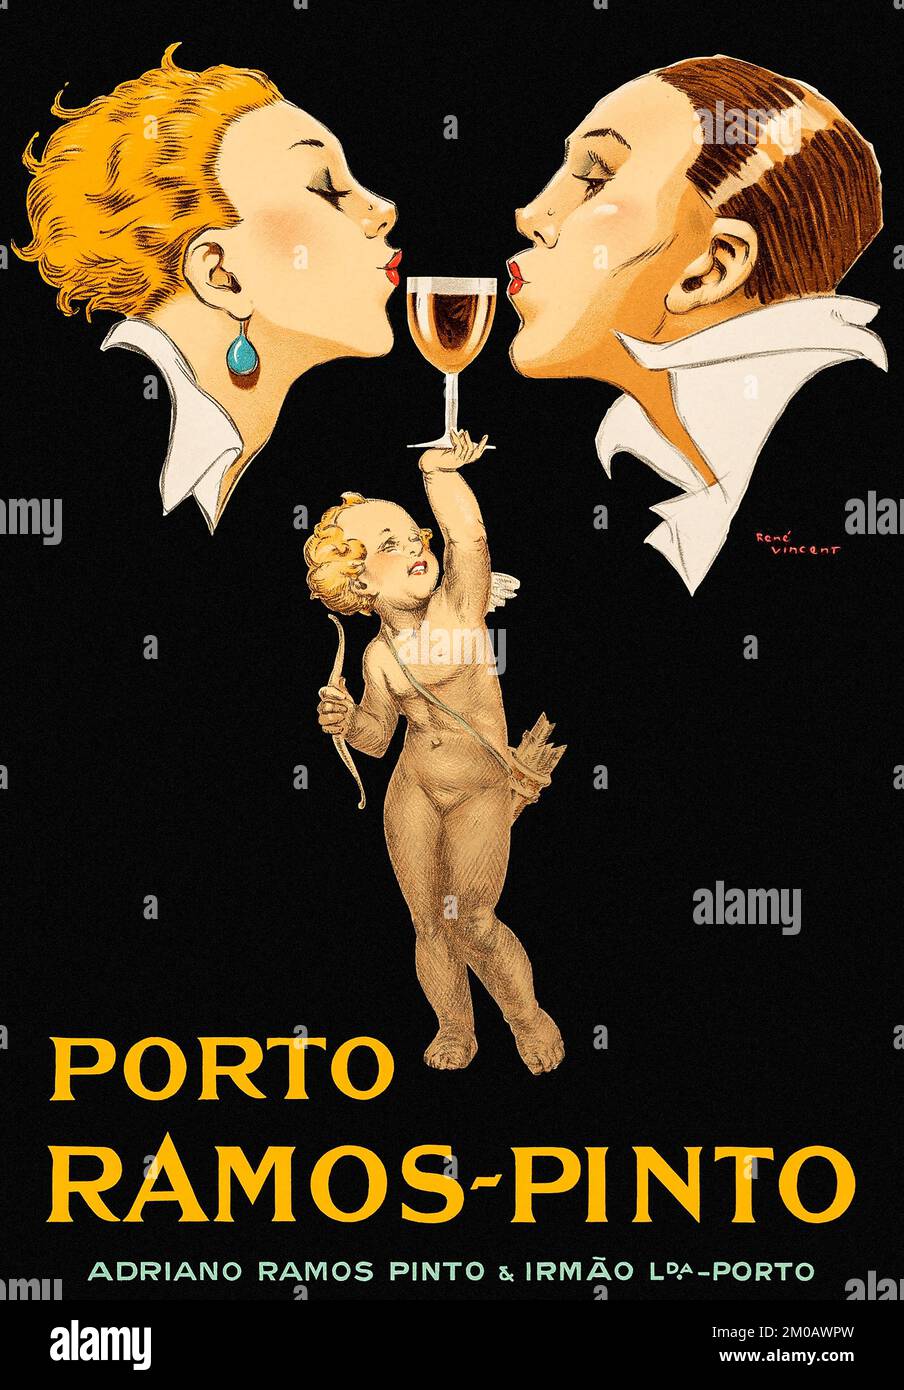 Publicidad del alcohol - Porto Ramos-Pinto (1920). Póster publicitario francés Foto de stock